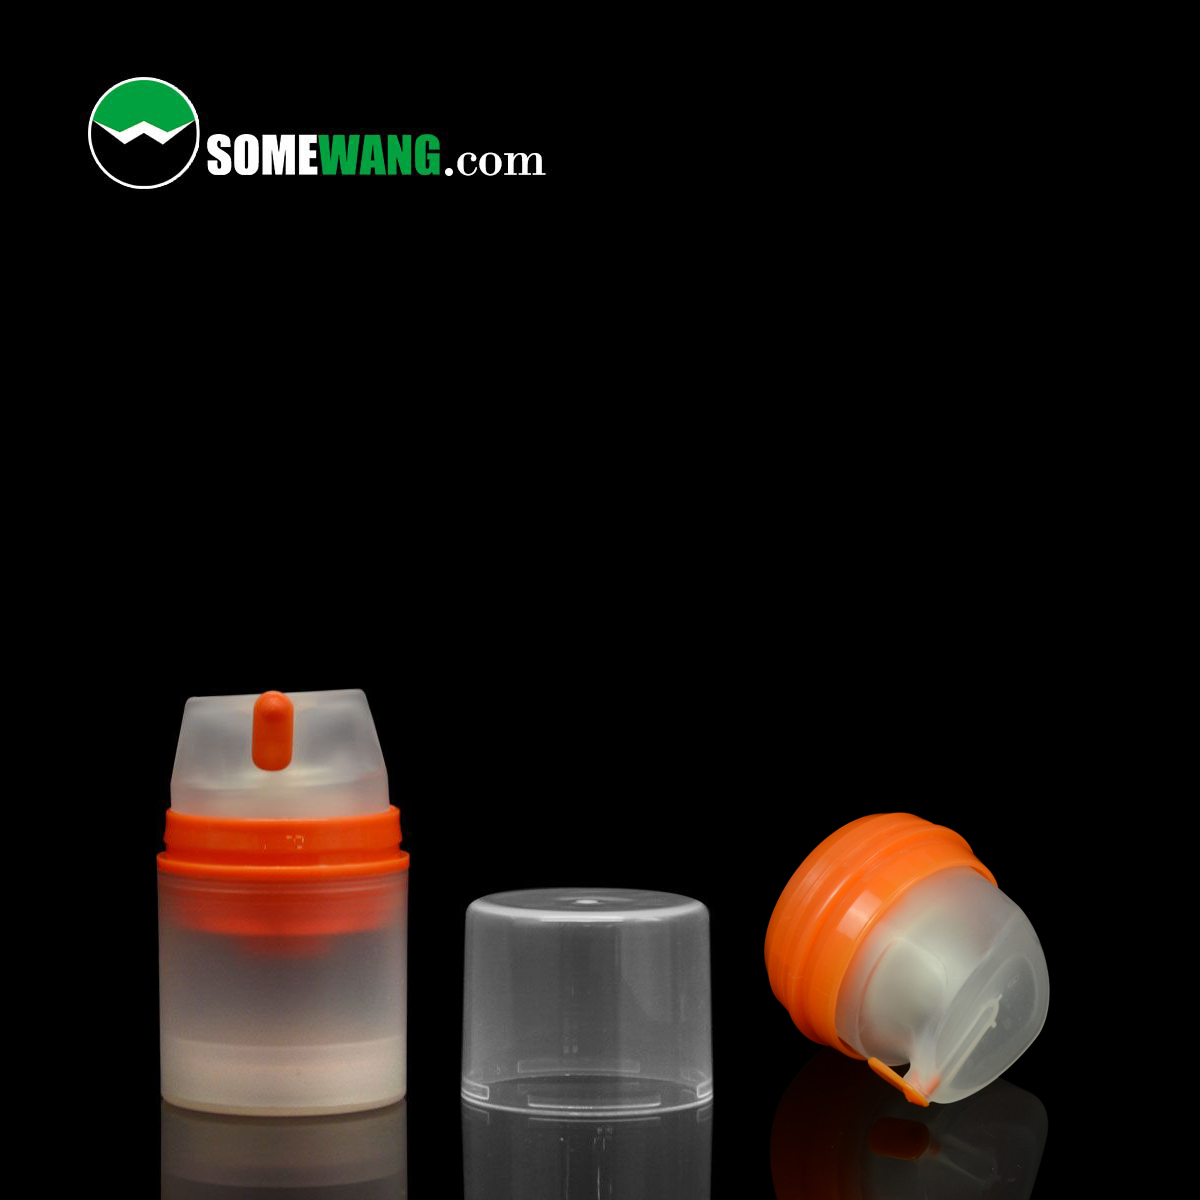 Zylindrische 35-ml-Farb-Airless-Pumpflasche aus PP-Kunststoff mit Snap-Lotion-Pumpe